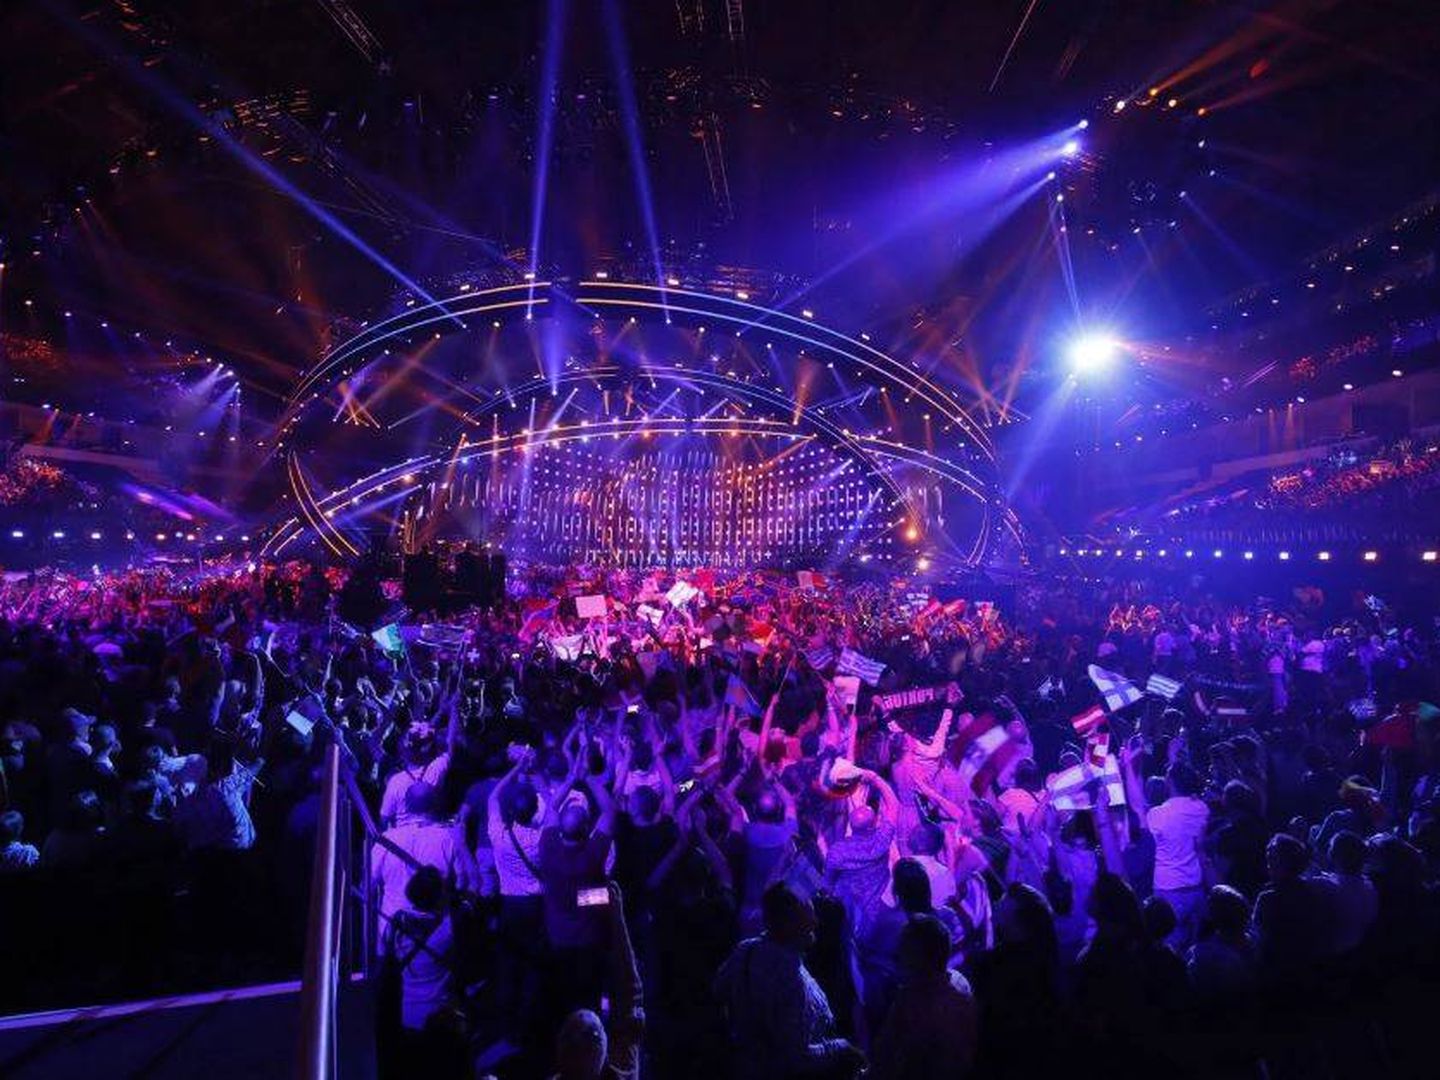 El escenario de Eurovisión 2018 durante la primera semifinal. (Eurovision.tv)